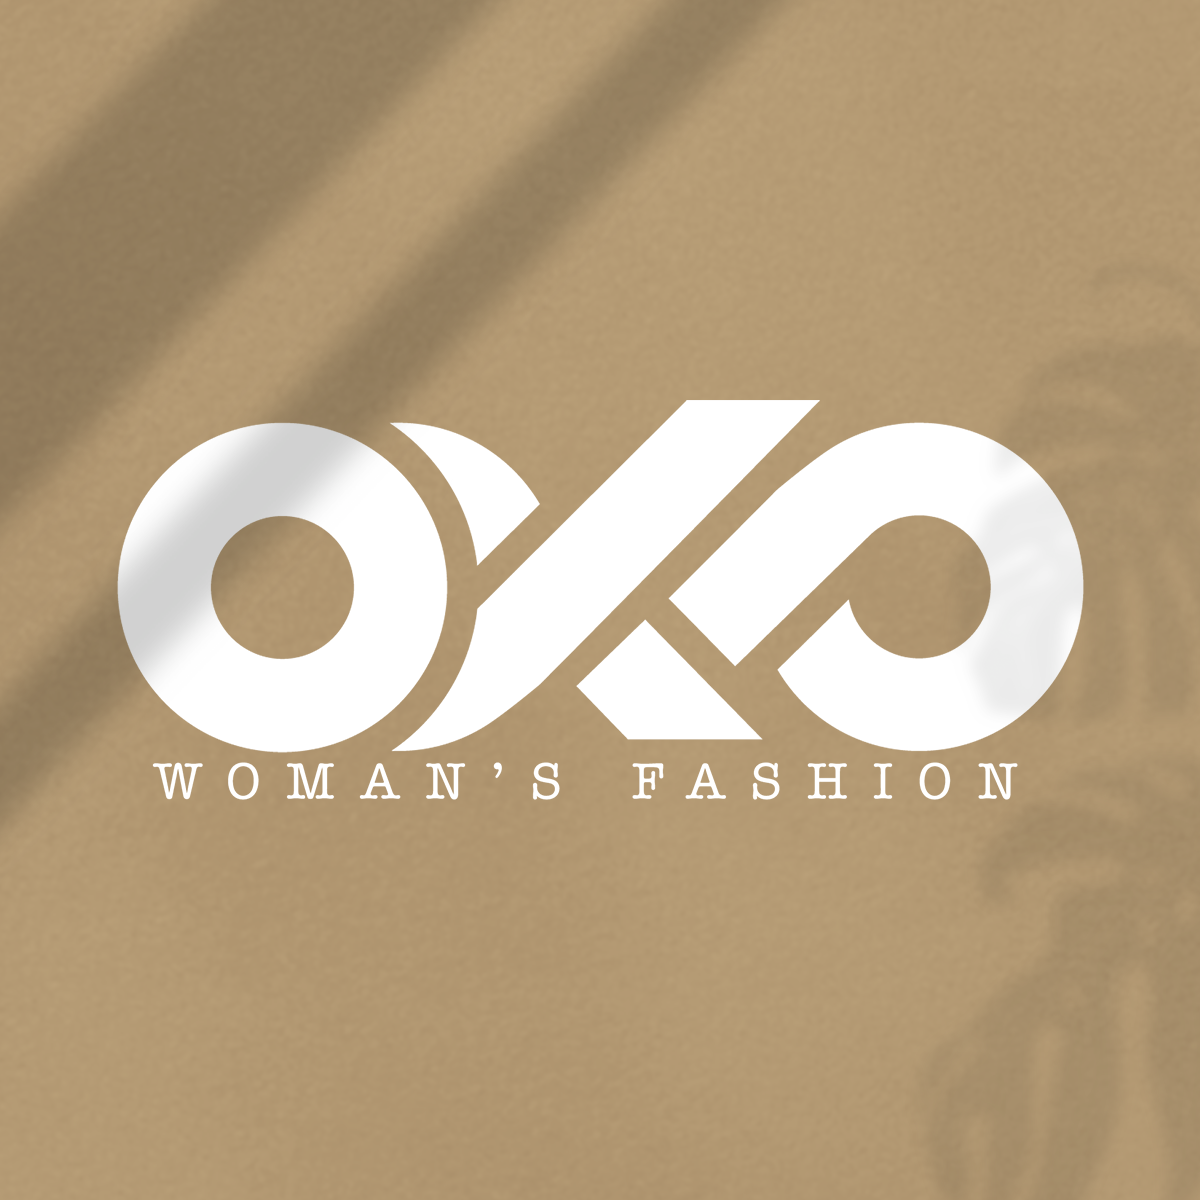 Oka woman’s fashion